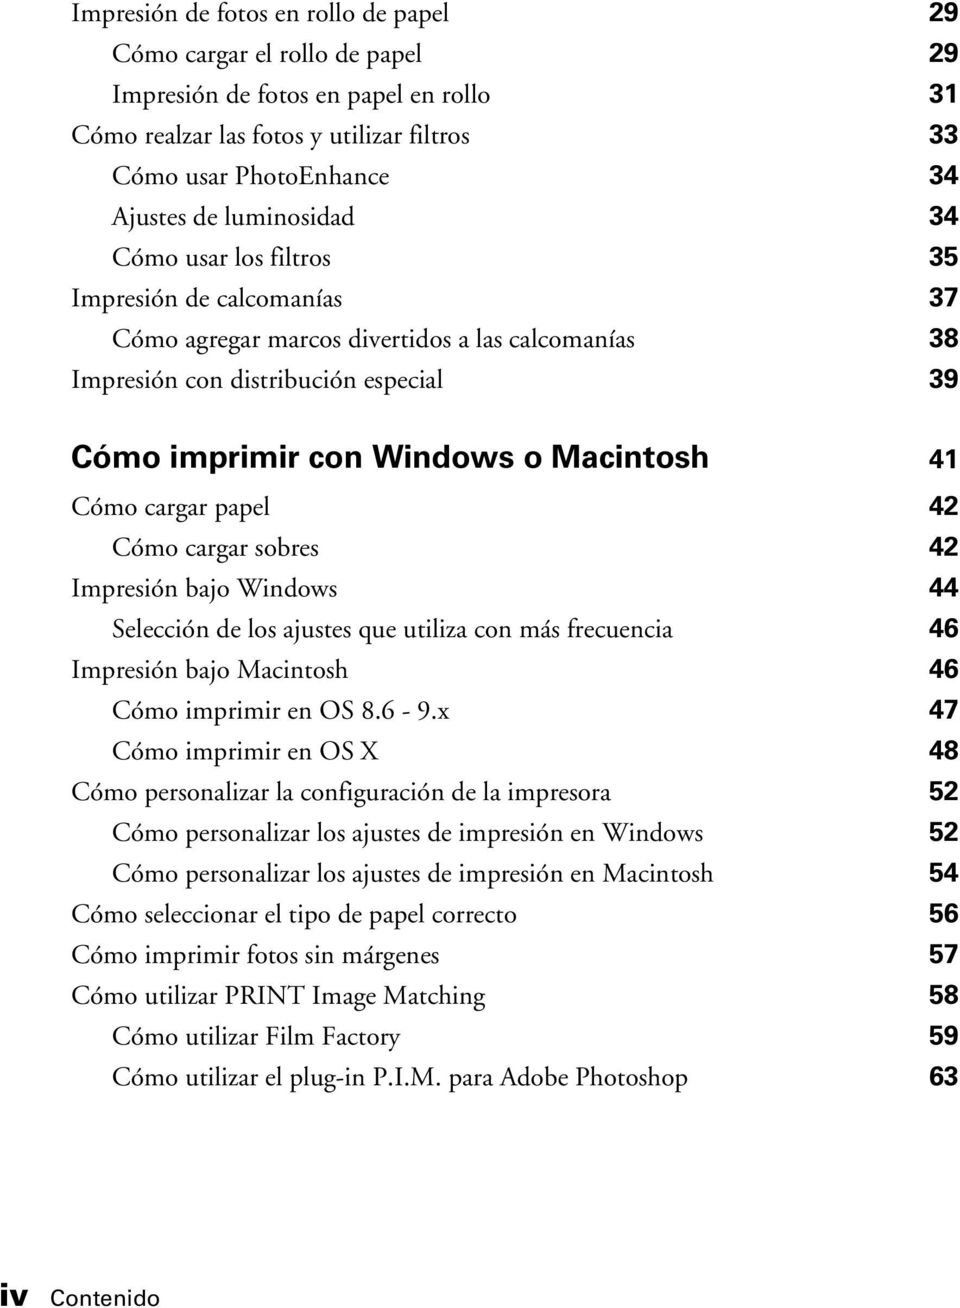 Cómo cargar papel 42 Cómo cargar sobres 42 Impresión bajo Windows 44 Selección de los ajustes que utiliza con más frecuencia 46 Impresión bajo Macintosh 46 Cómo imprimir en OS 8.6-9.